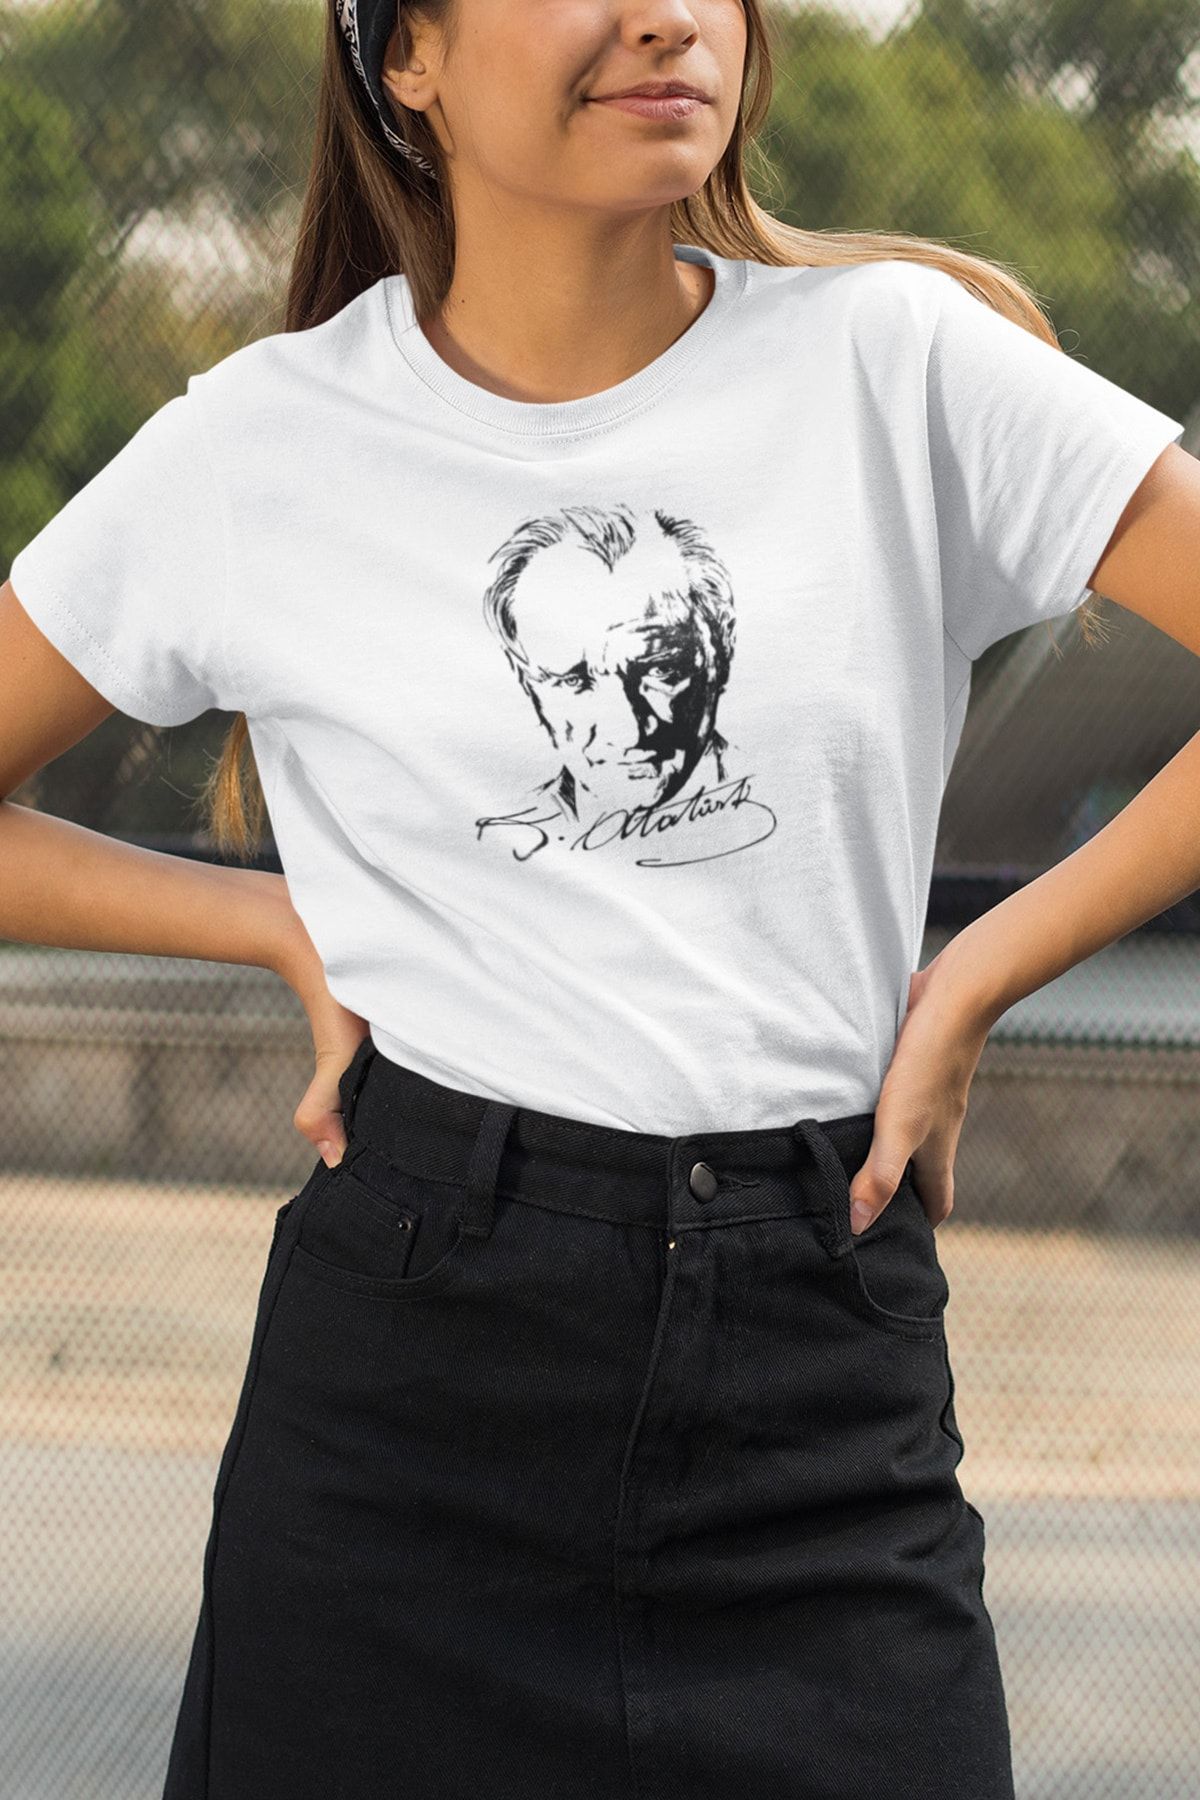 Kio Tasarım Atatürk Serisi Tişört Kadın Çocuk Tişörtü Arkadaşa Sevgiliye Hediye Doğum Günü Hediyesi T-shirt